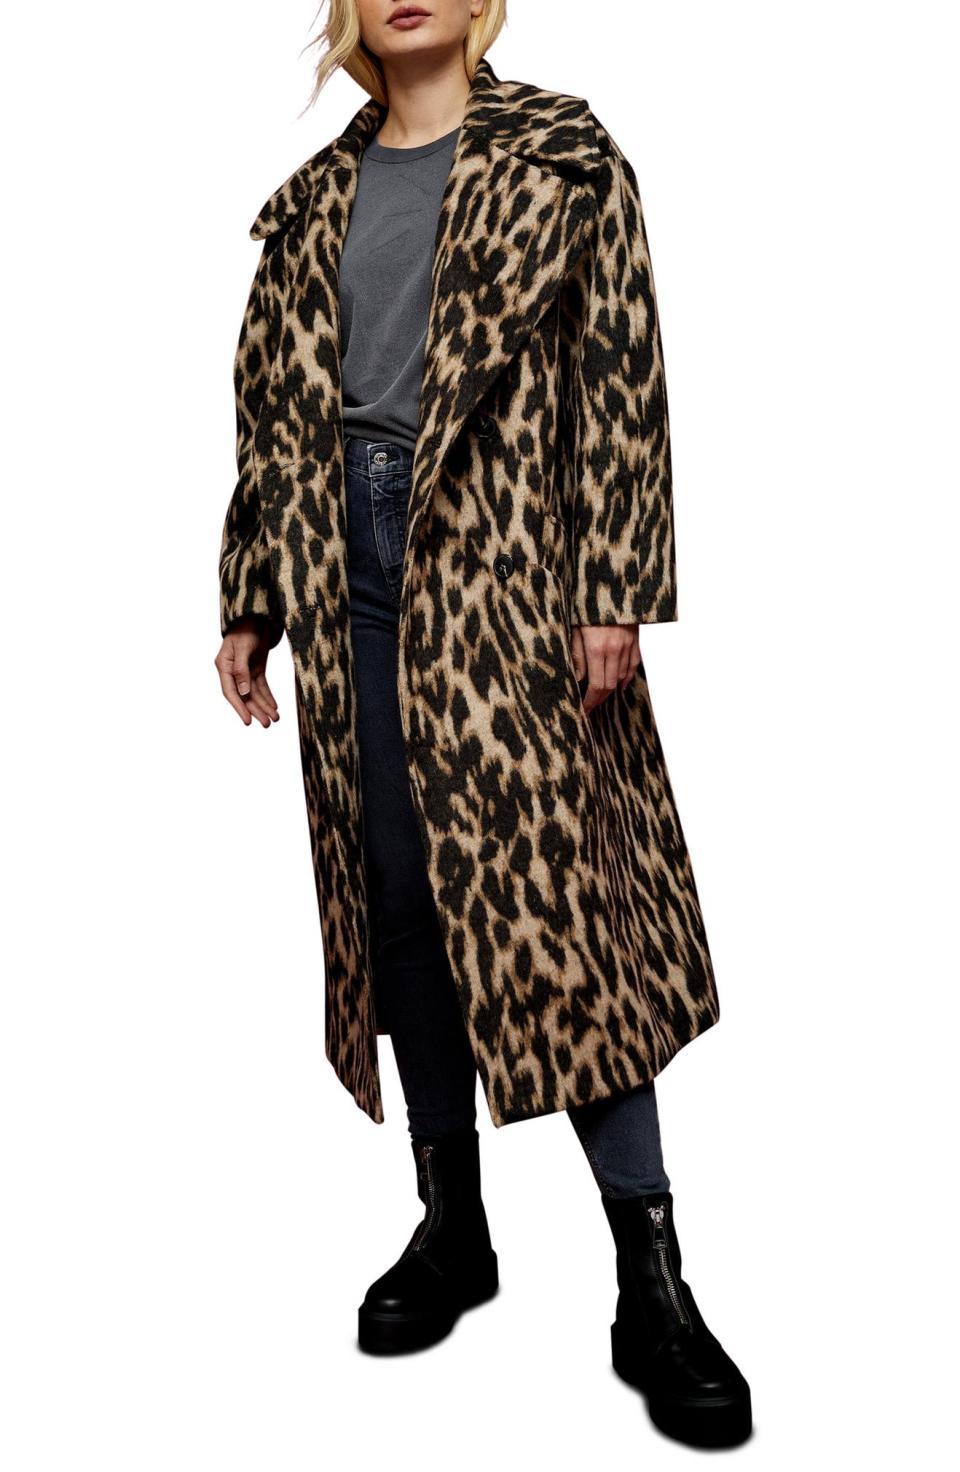 Topshop Leopard Print Maxi Coat. Image via Nordstrom.